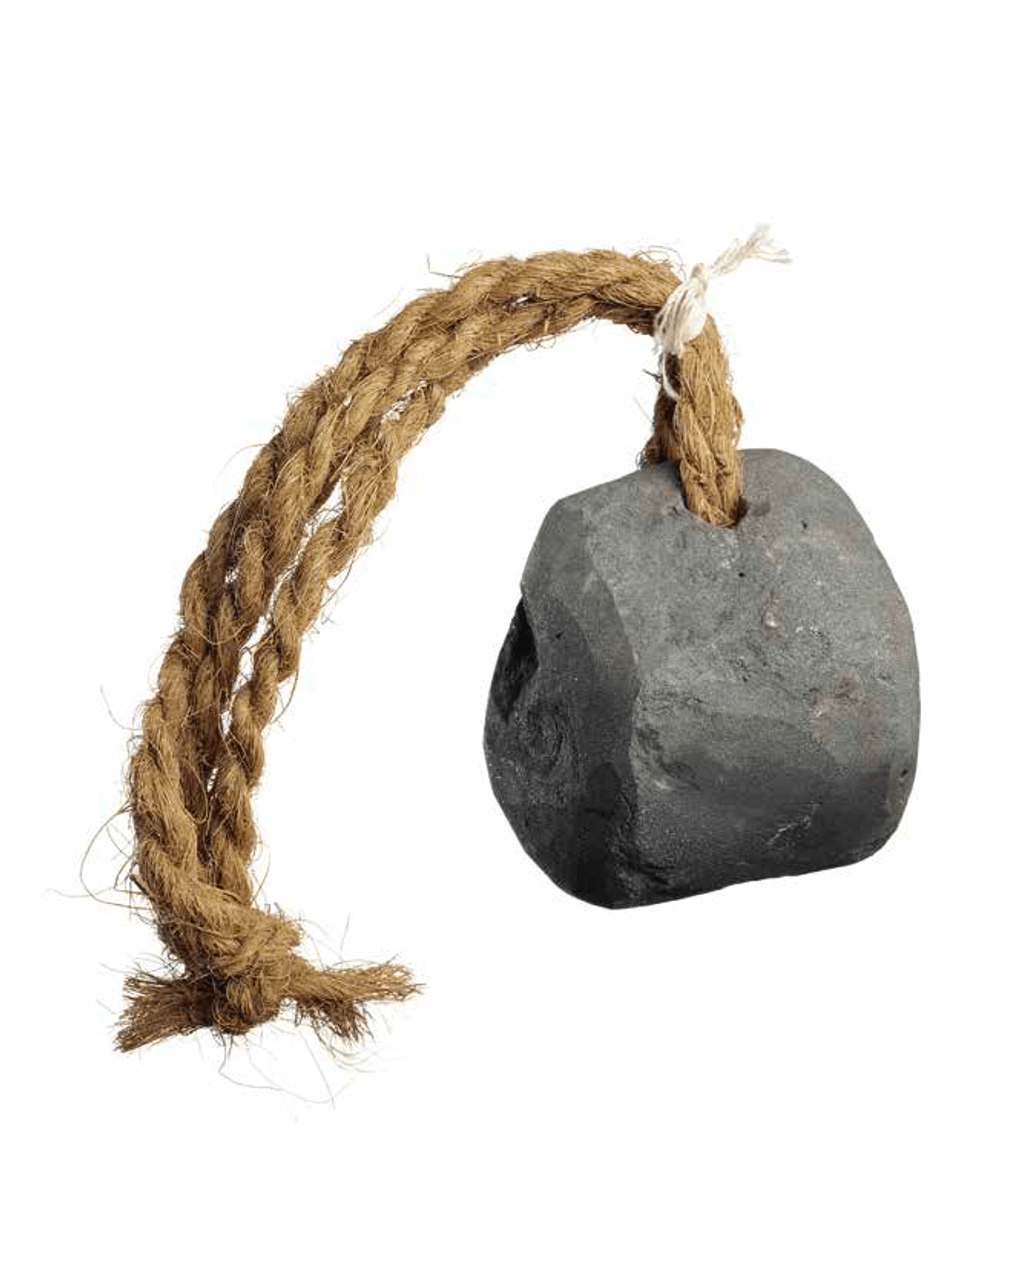 Камень ныряльщика. XX век. Фотография предоставлена Музеем шейха Фейсала, Катар